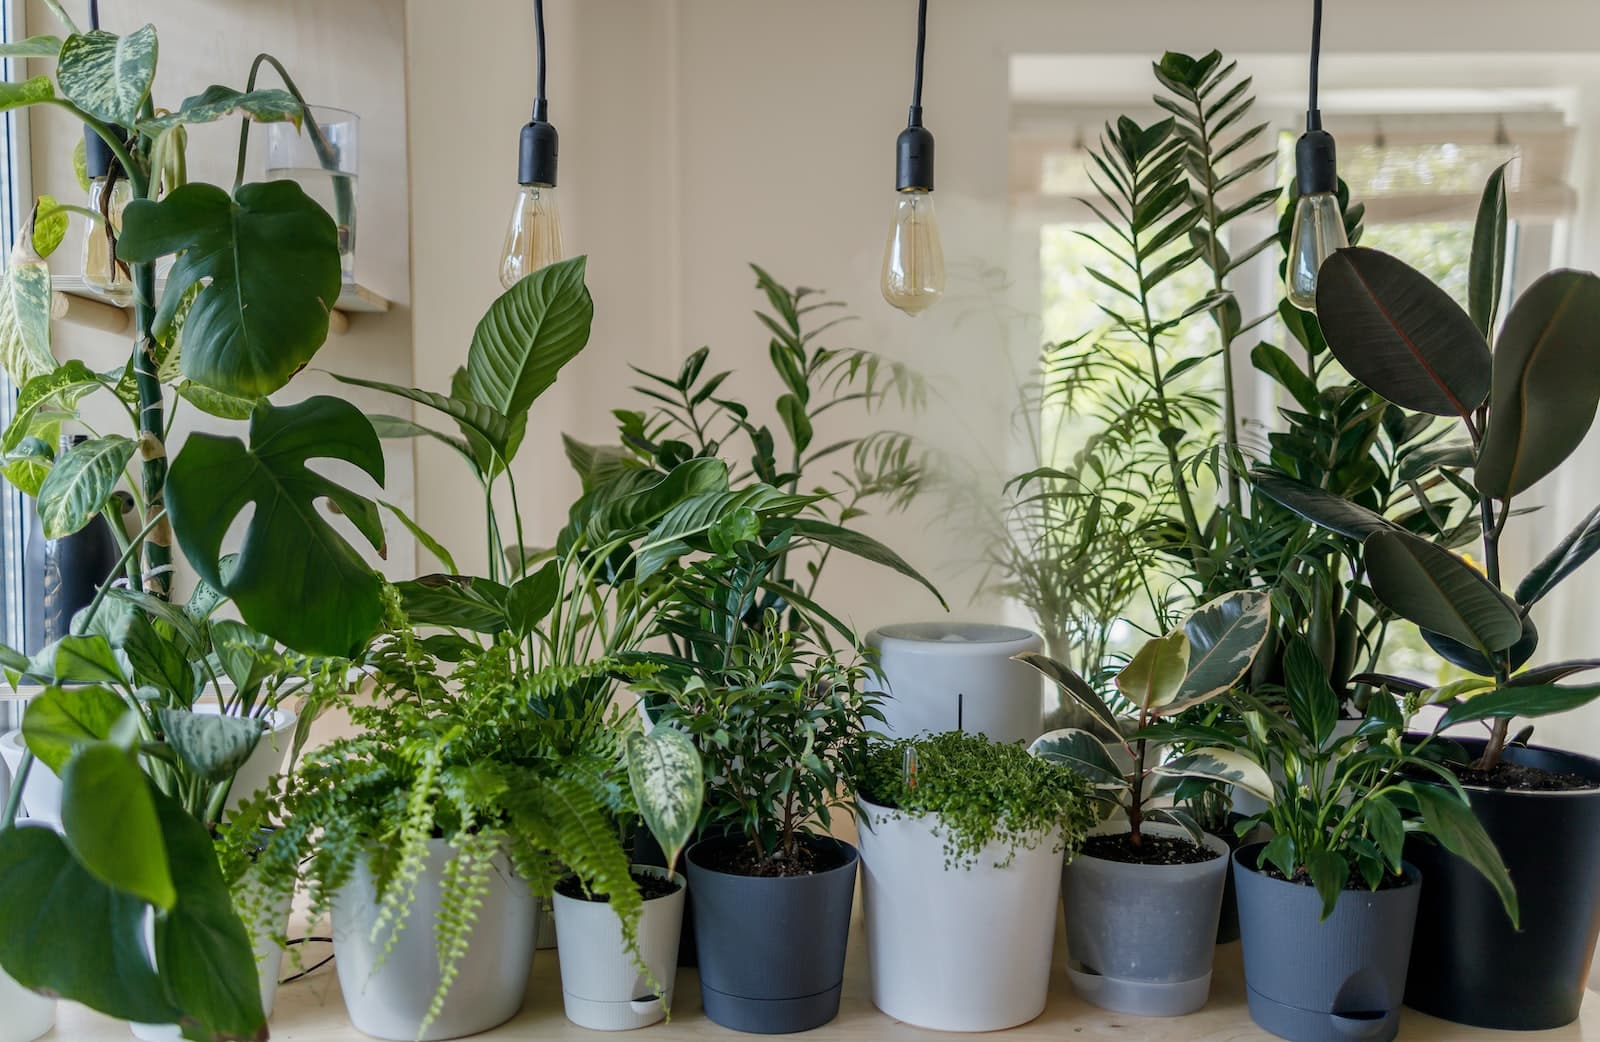 8zelrodsvtc 15 Best Indoor Plants To Improve Your Home & Health 1